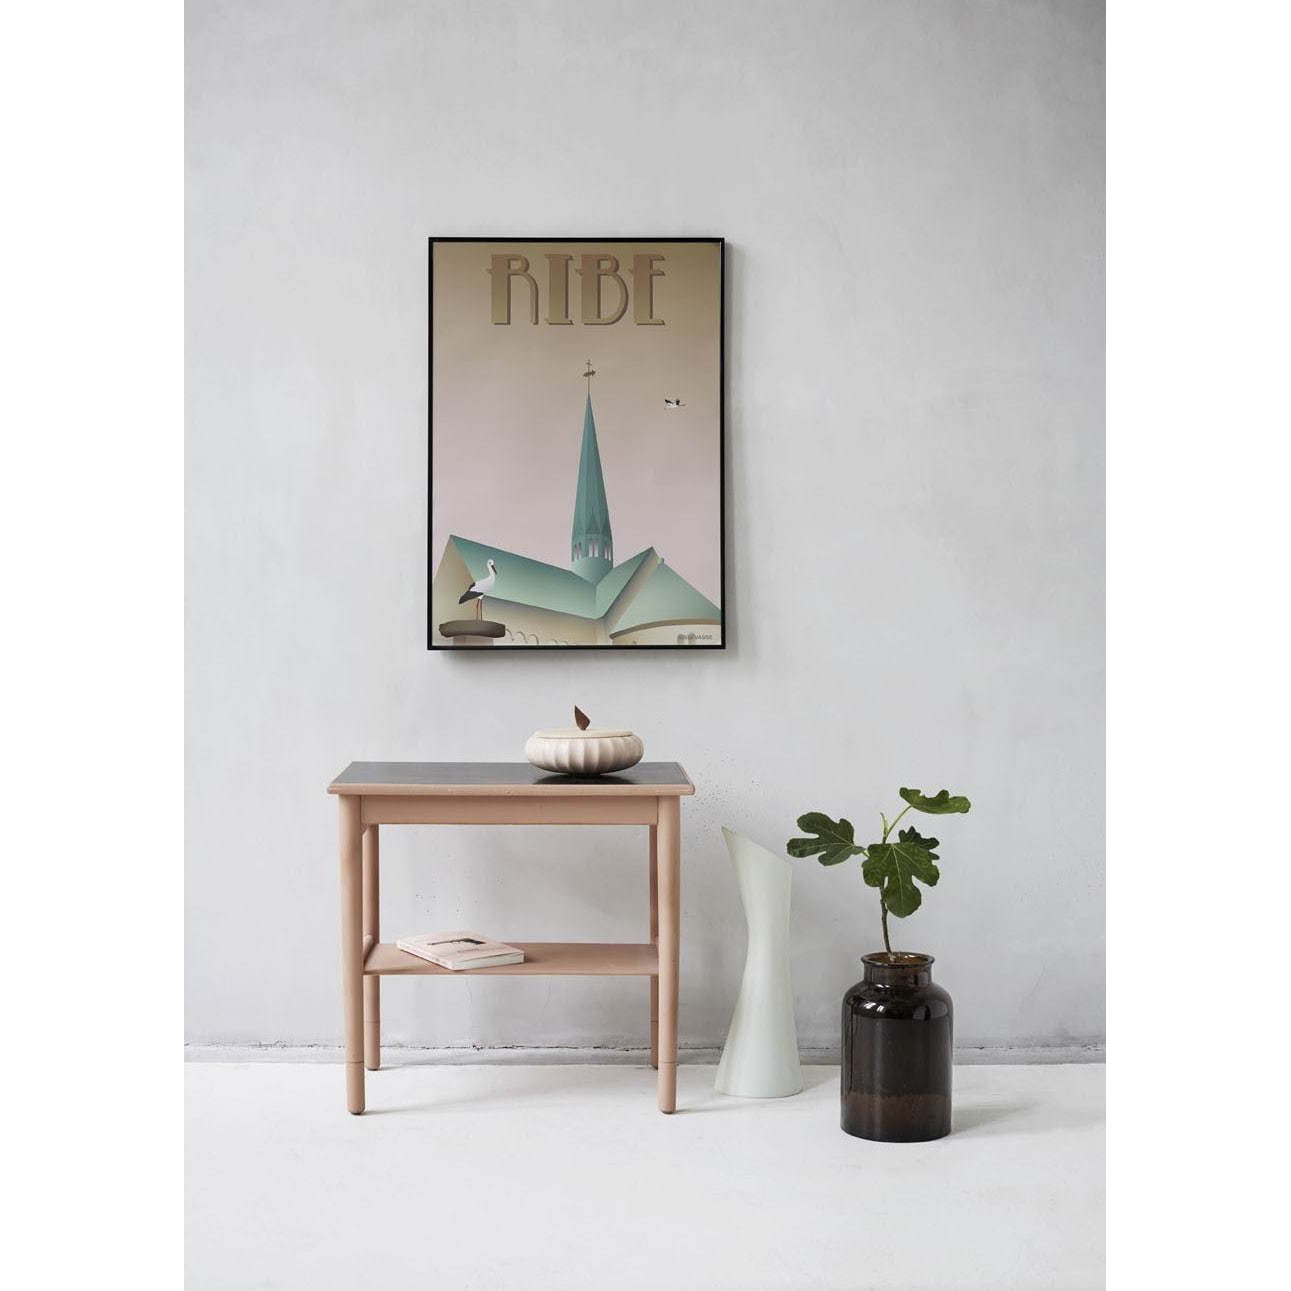 Vissevasse Ribe Storks plakát, 15 x21 cm